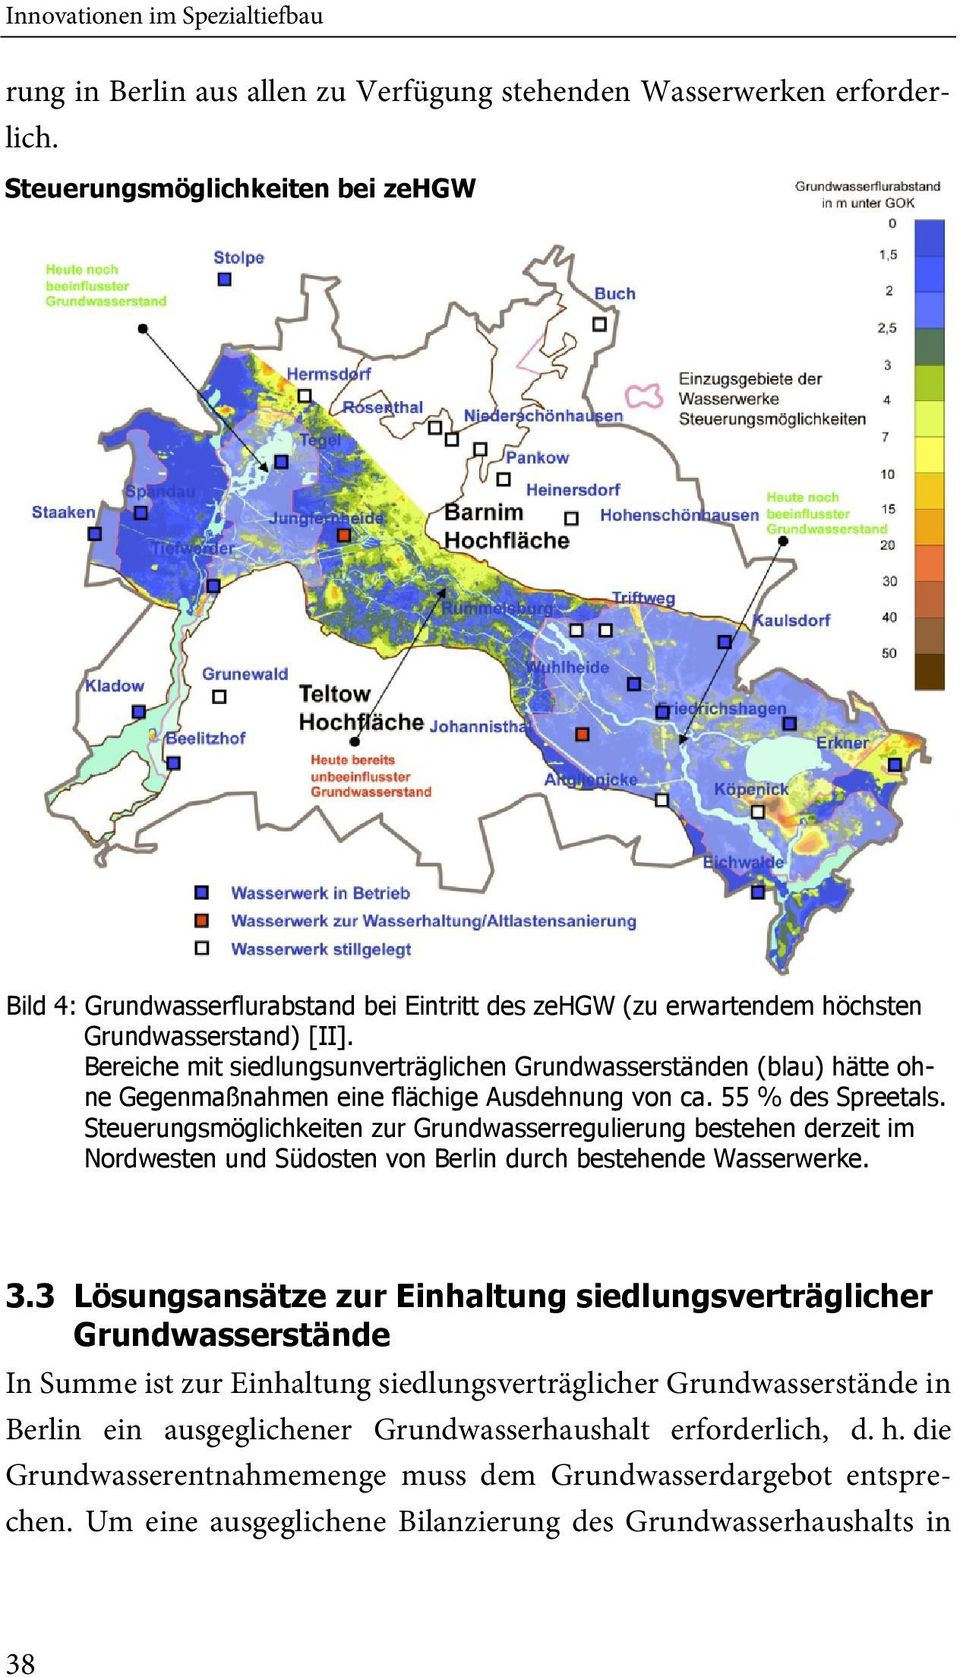 Bereiche mit siedlungsunverträglichen Grundwasserständen (blau) hätte ohne Gegenmaßnahmen eine flächige Ausdehnung von ca. 55 % des Spreetals.